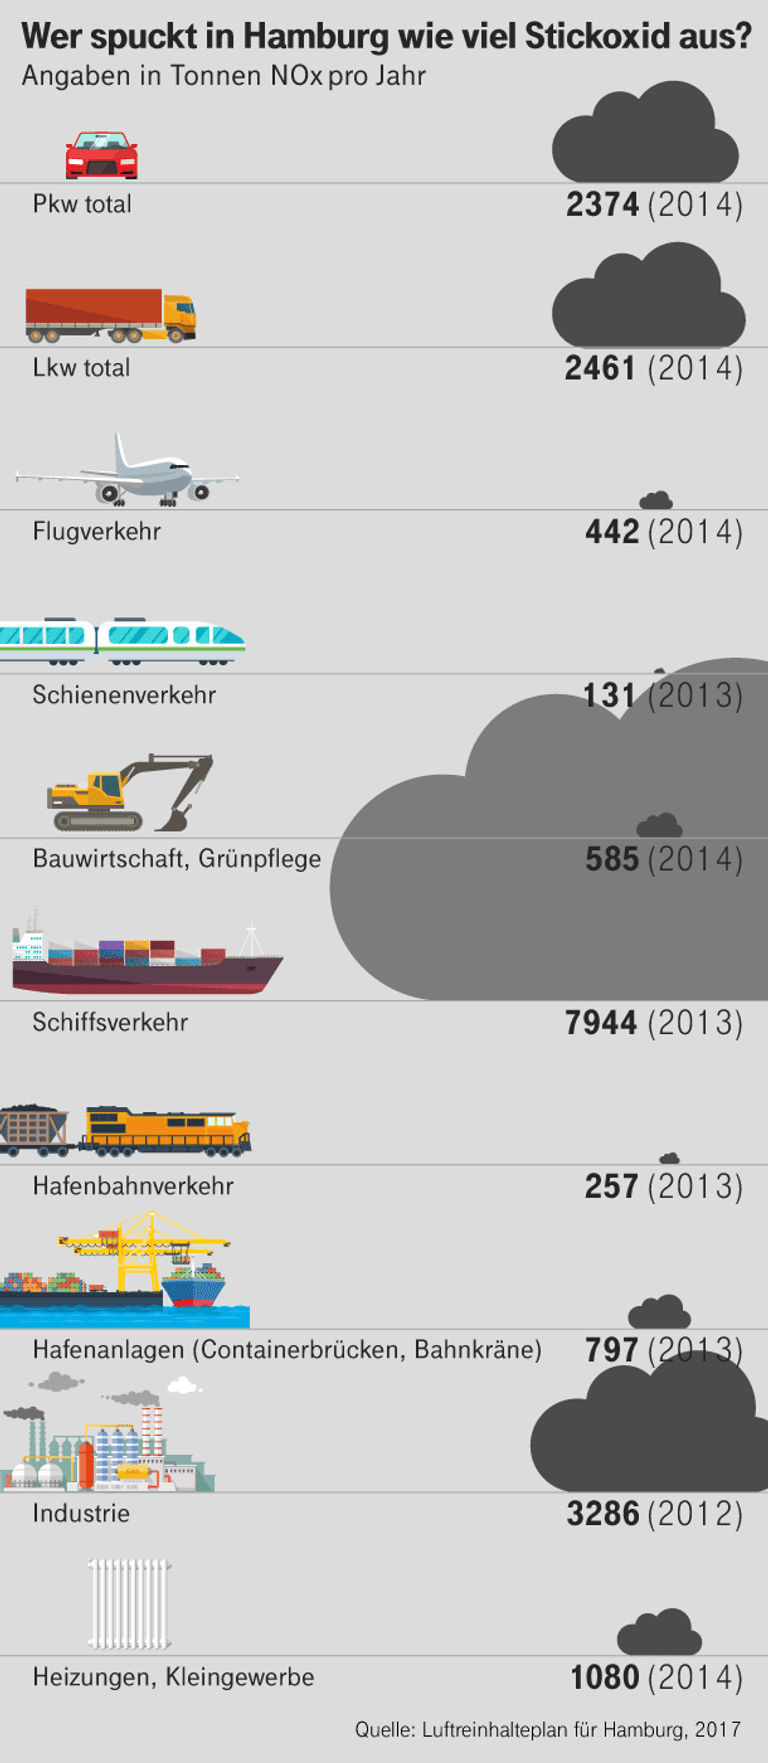 Die Schiffahrt ist in Hamburg die größte Quelle für Stickoxid.